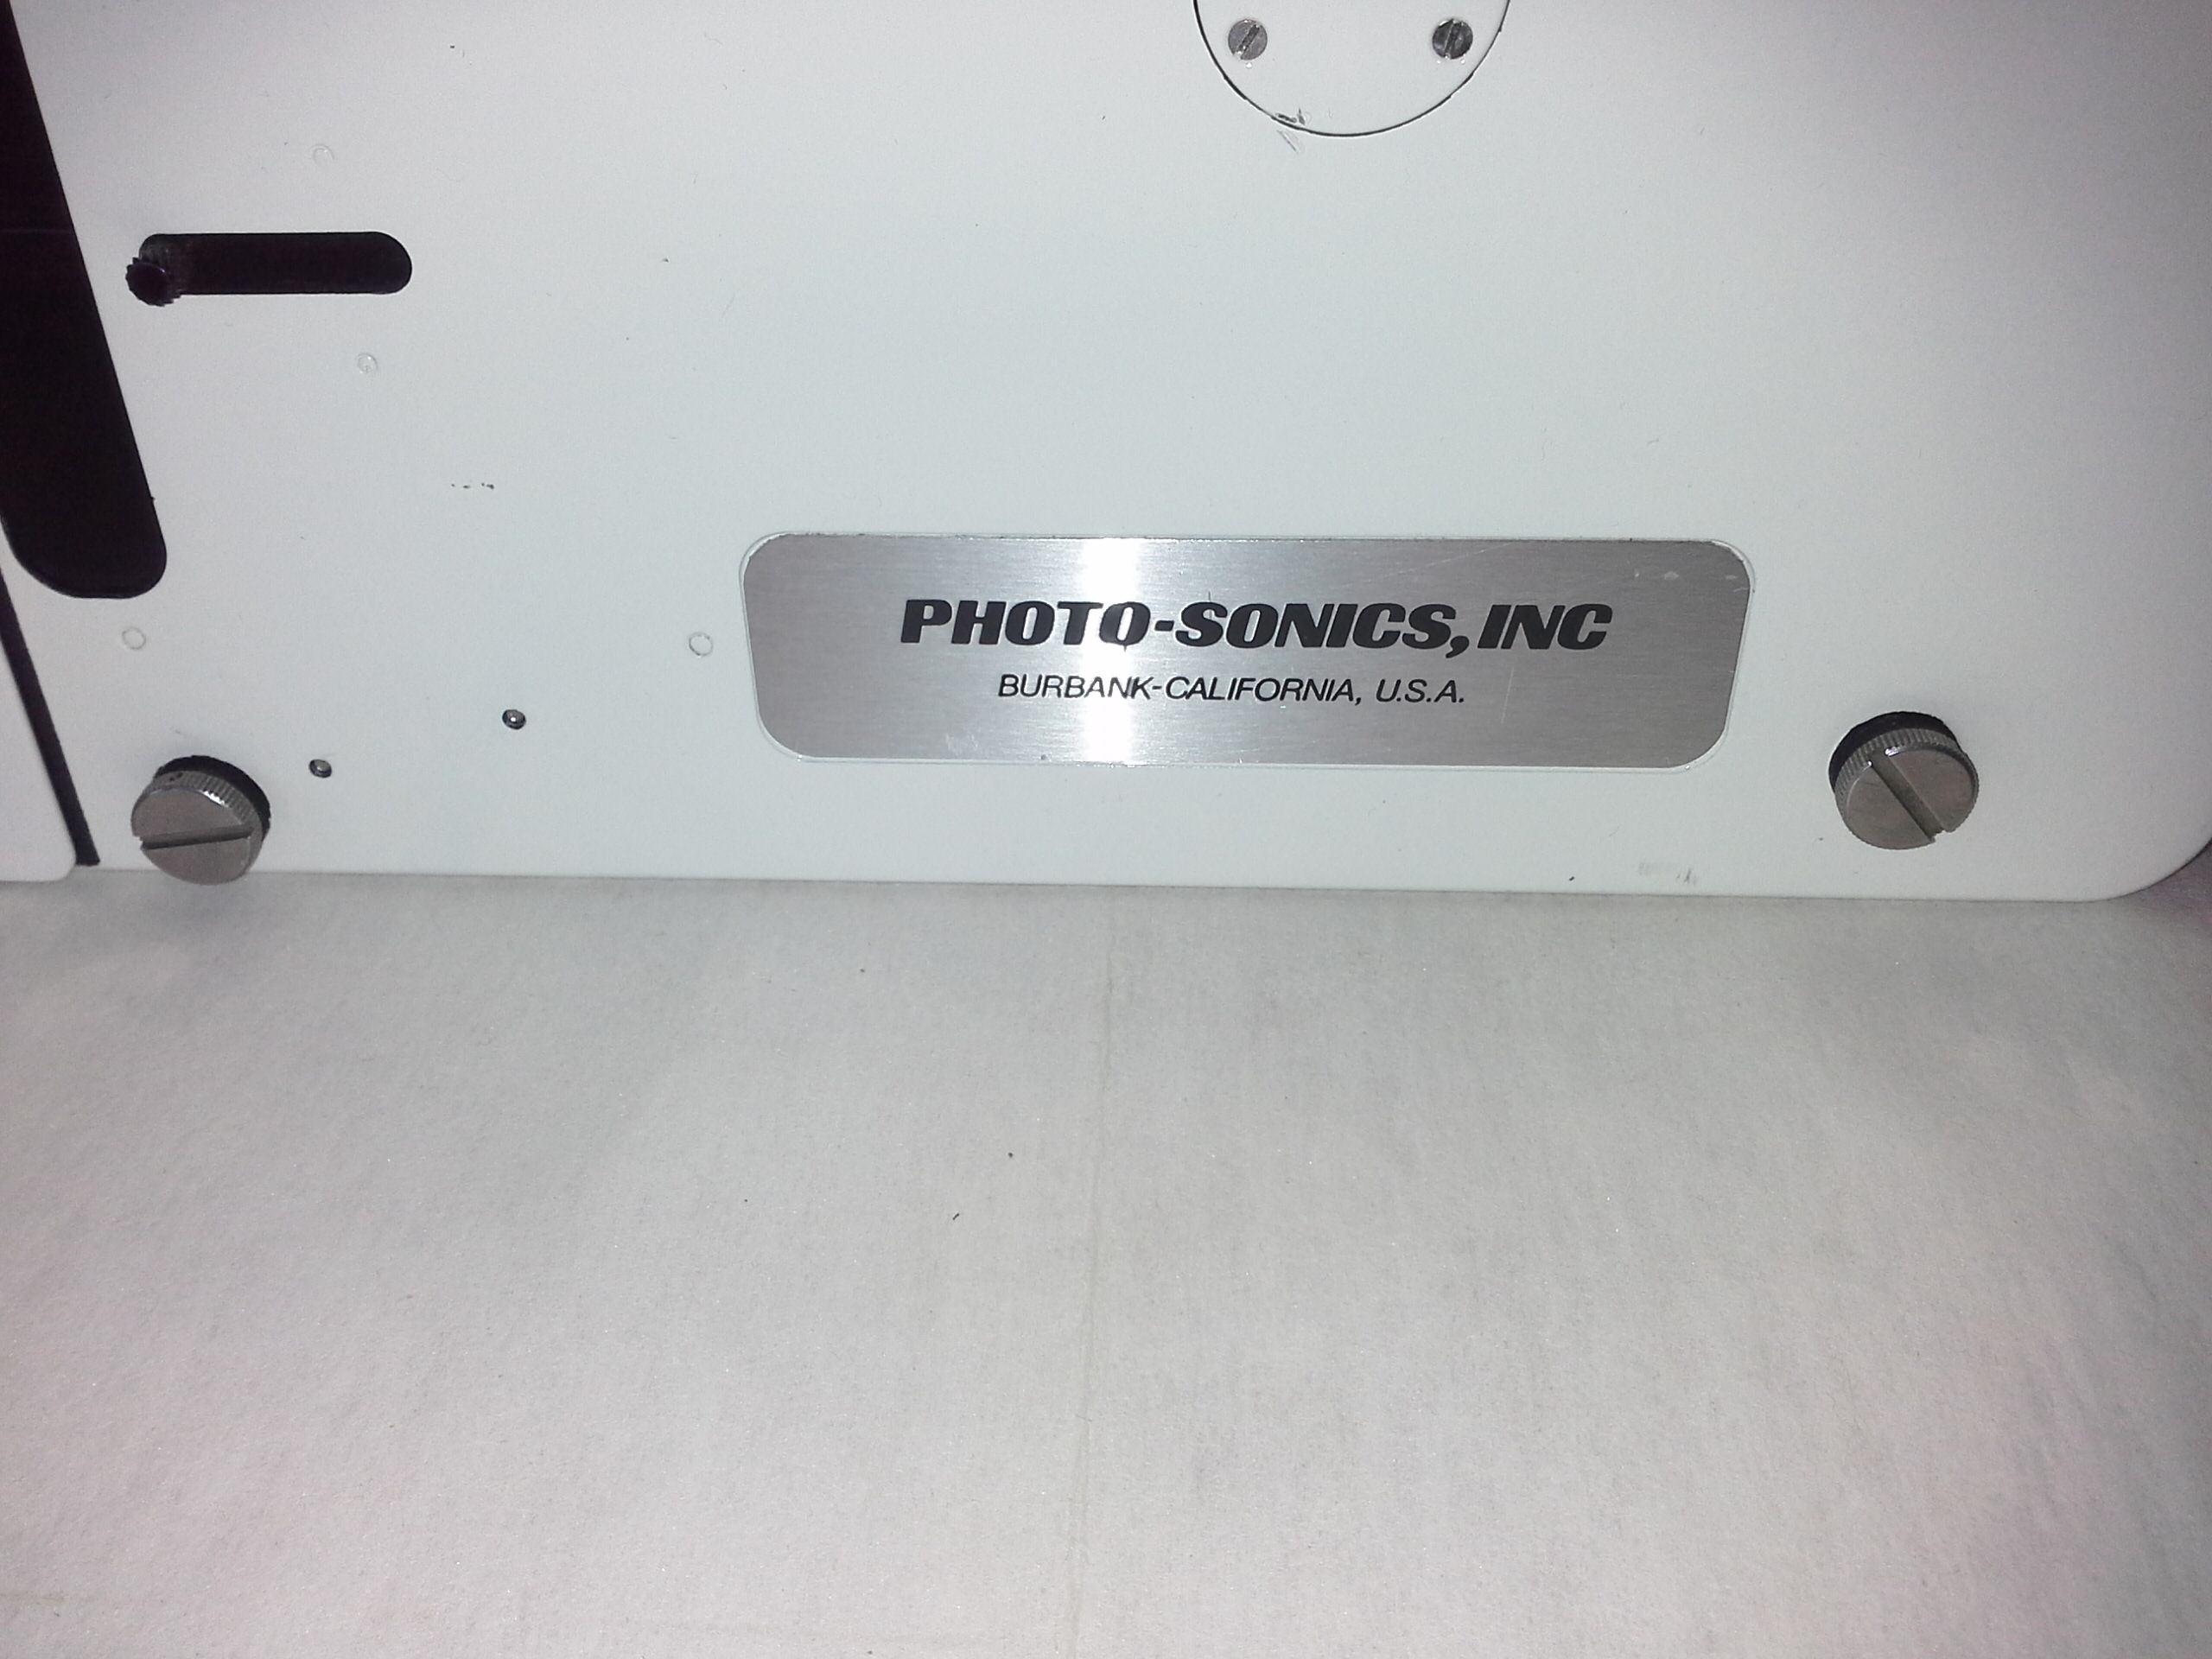 Photo Sonics 16 mm 1-PL Hochgeschwindigkeitskamera